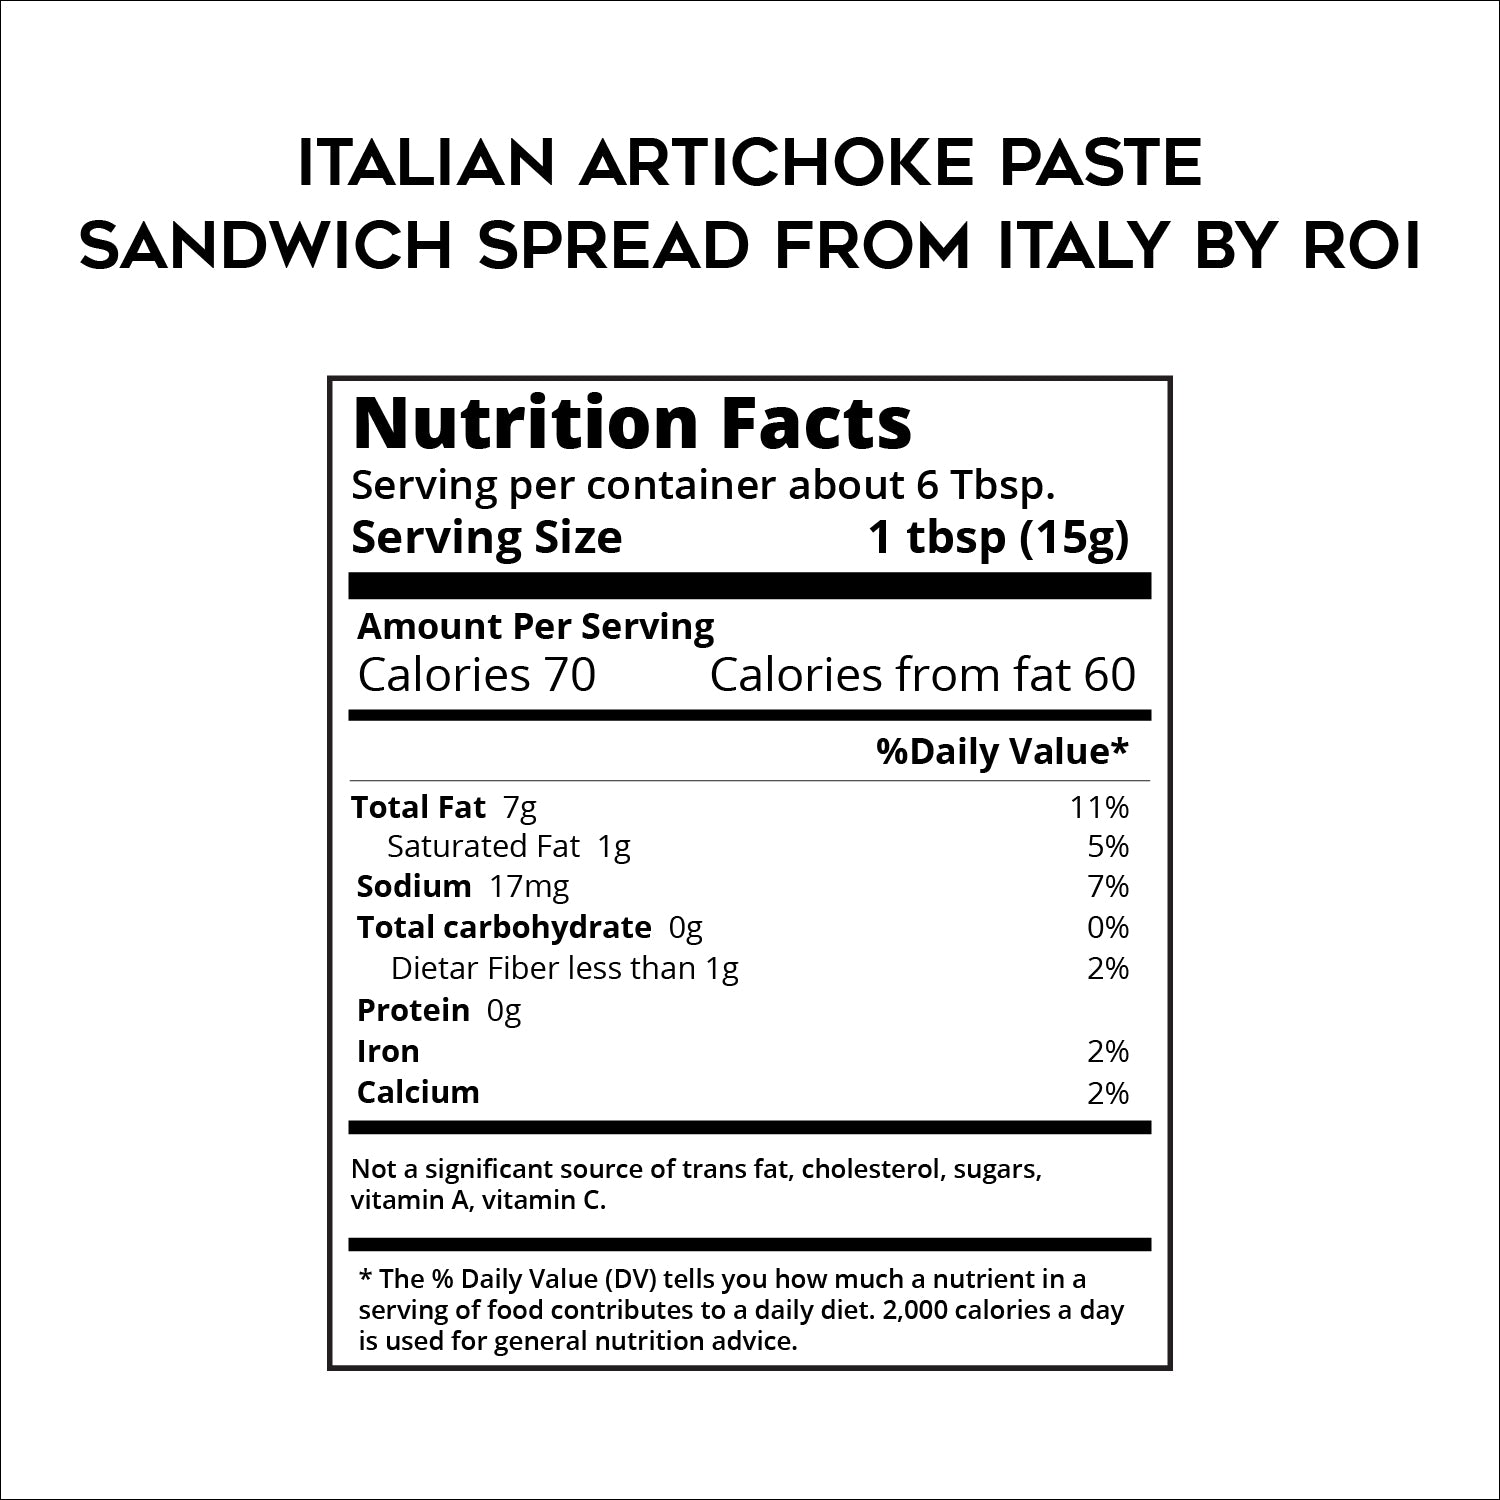 Italian Artichoke Paste - Sandwich Spread From Italy by ROI